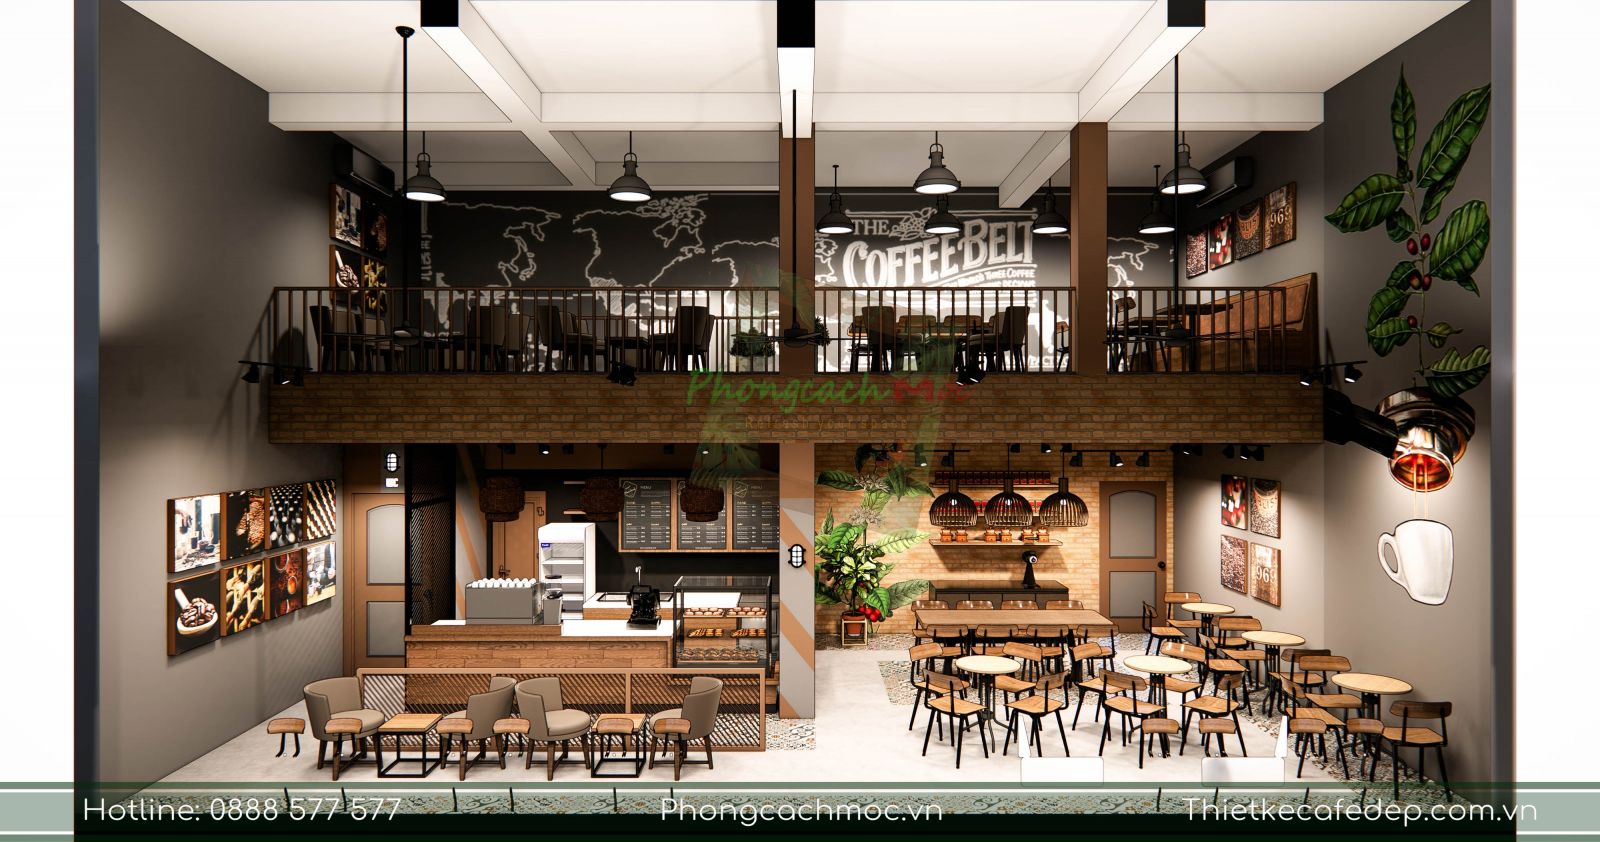 10 mẫu & ý tưởng thiết kế quán cafe nhỏ giá rẻ đẹp nhất 2019